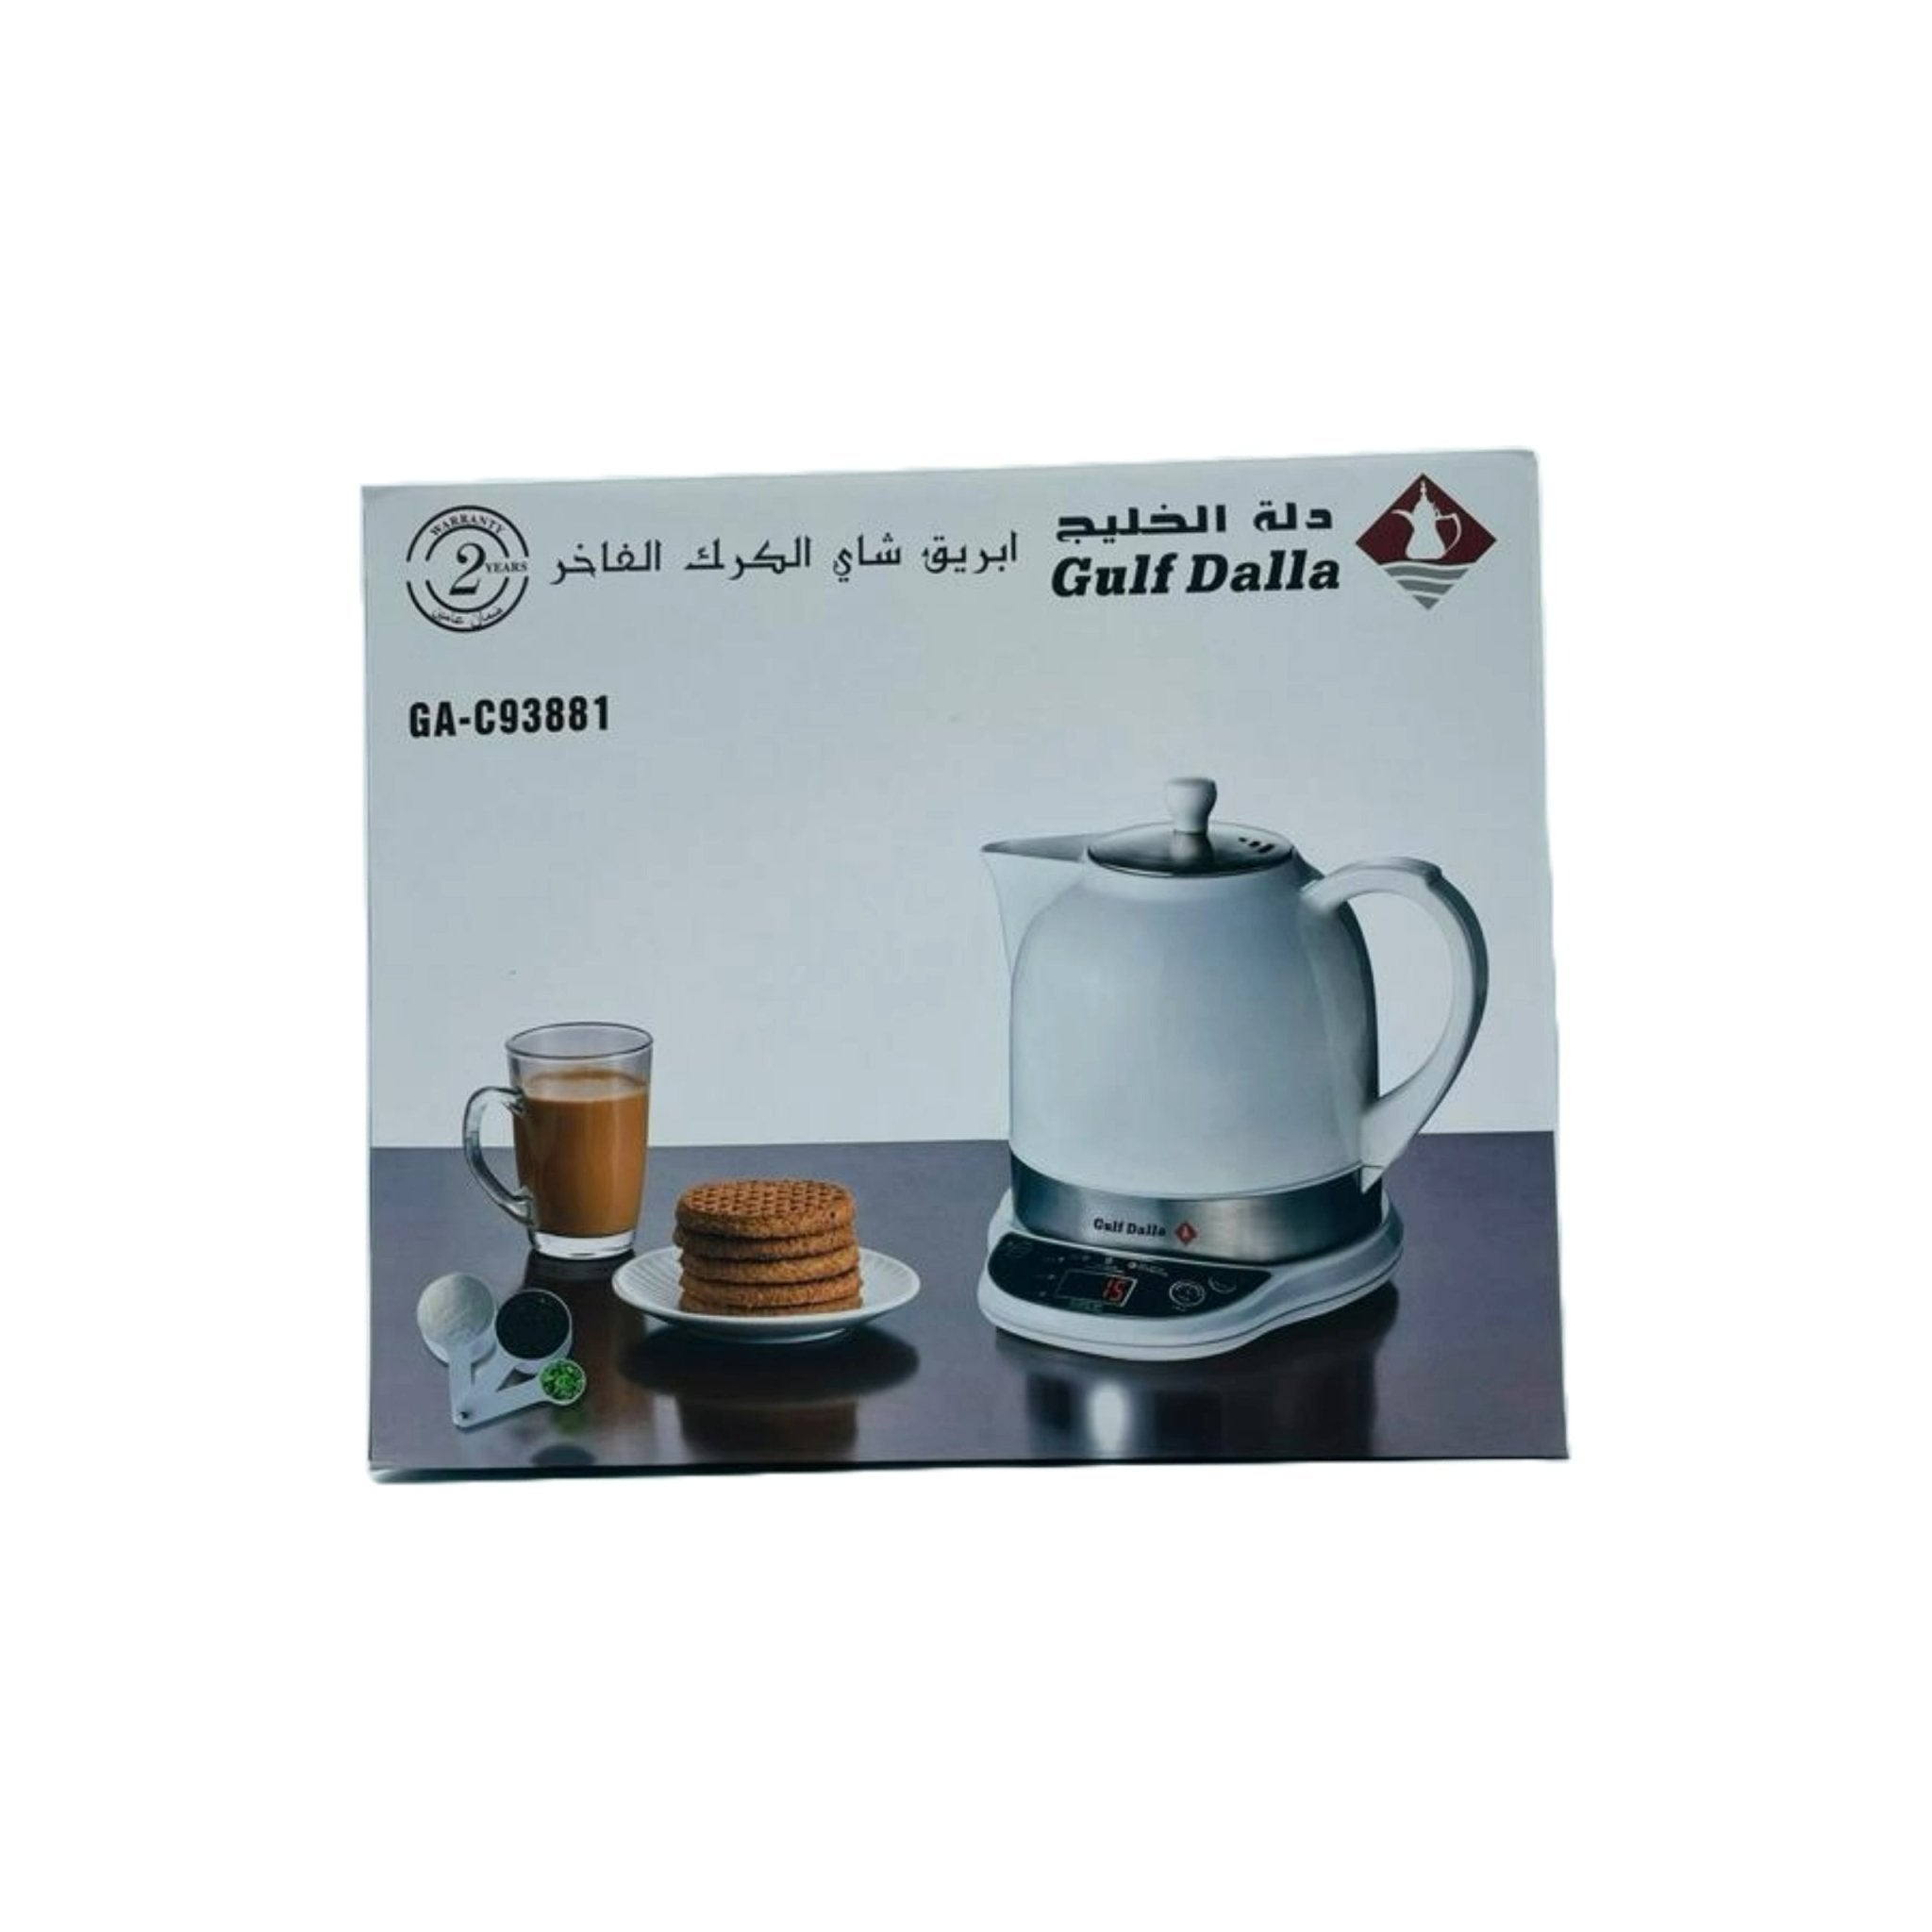 Gulf Dalla Karak 1.2L GA-C93881 - White